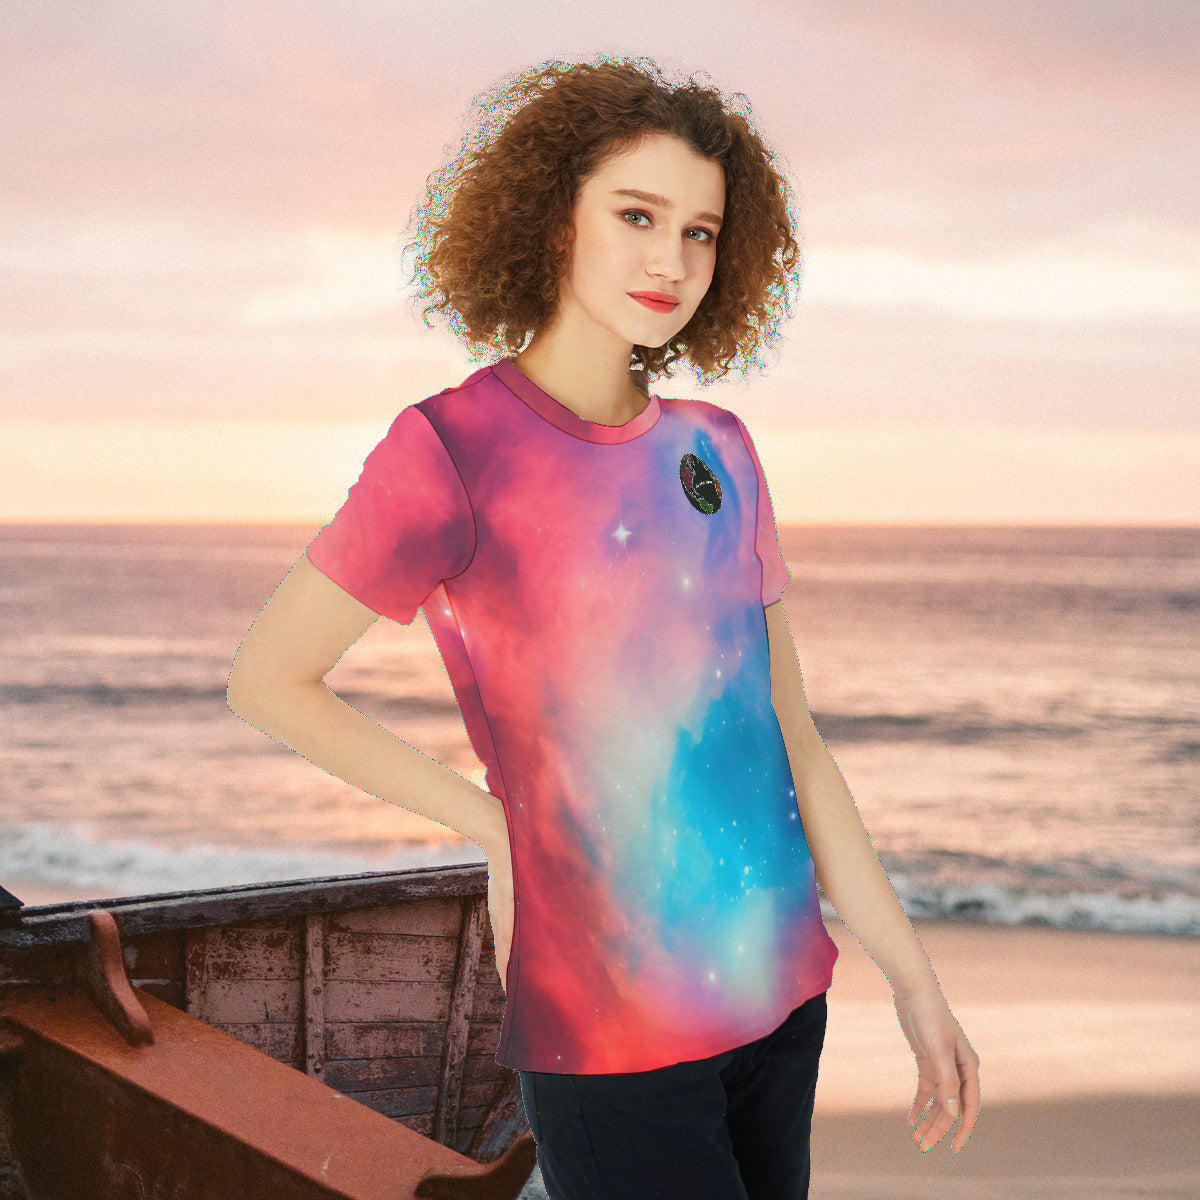 Good Vibes Red and Blue Nebula Round Neck Women's Fashion T-Shirt - The Nebula Palace